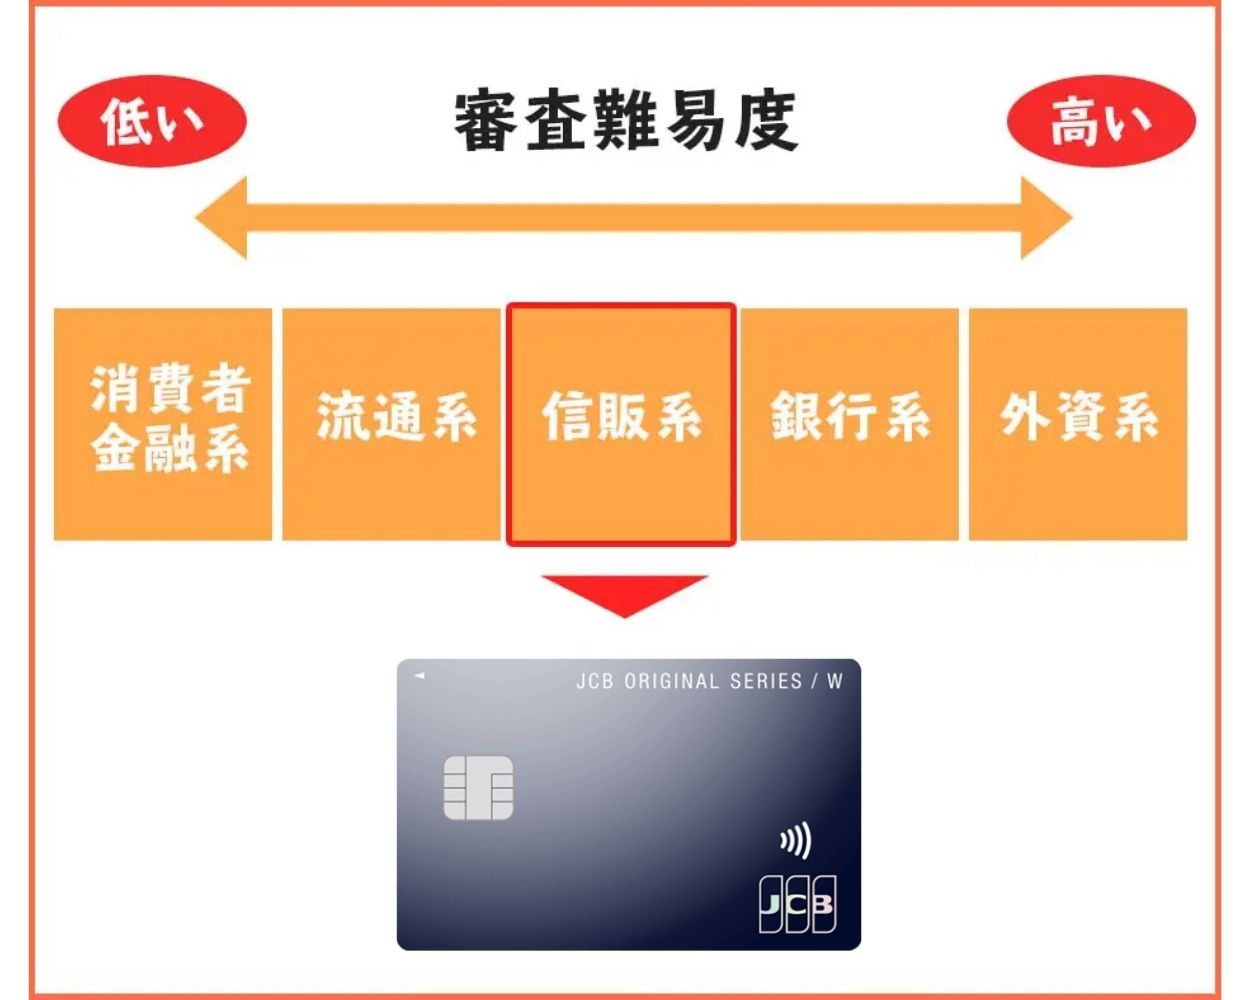 JCBカードWは信販系のクレジットカード